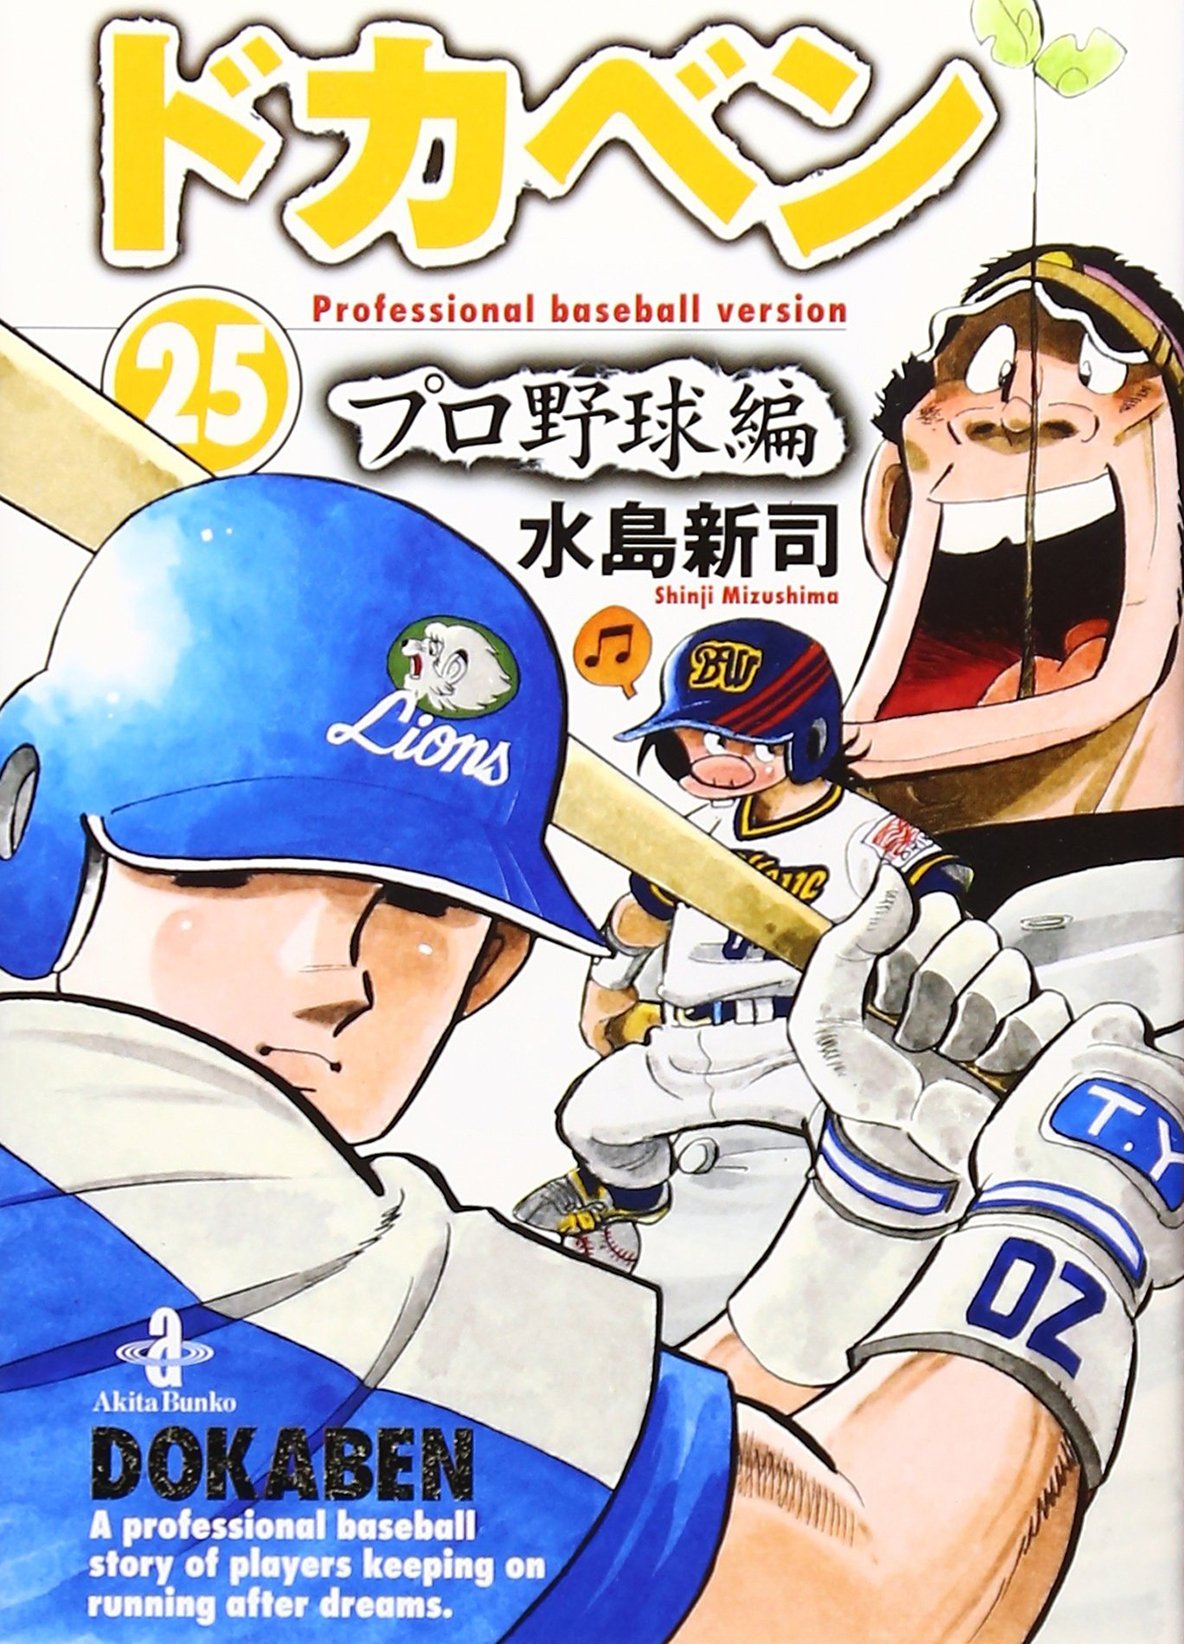 2ページ目 ドカベン 山田 が圧倒的 野球漫画の 史上最強のスラッガー ランキング ふたまん